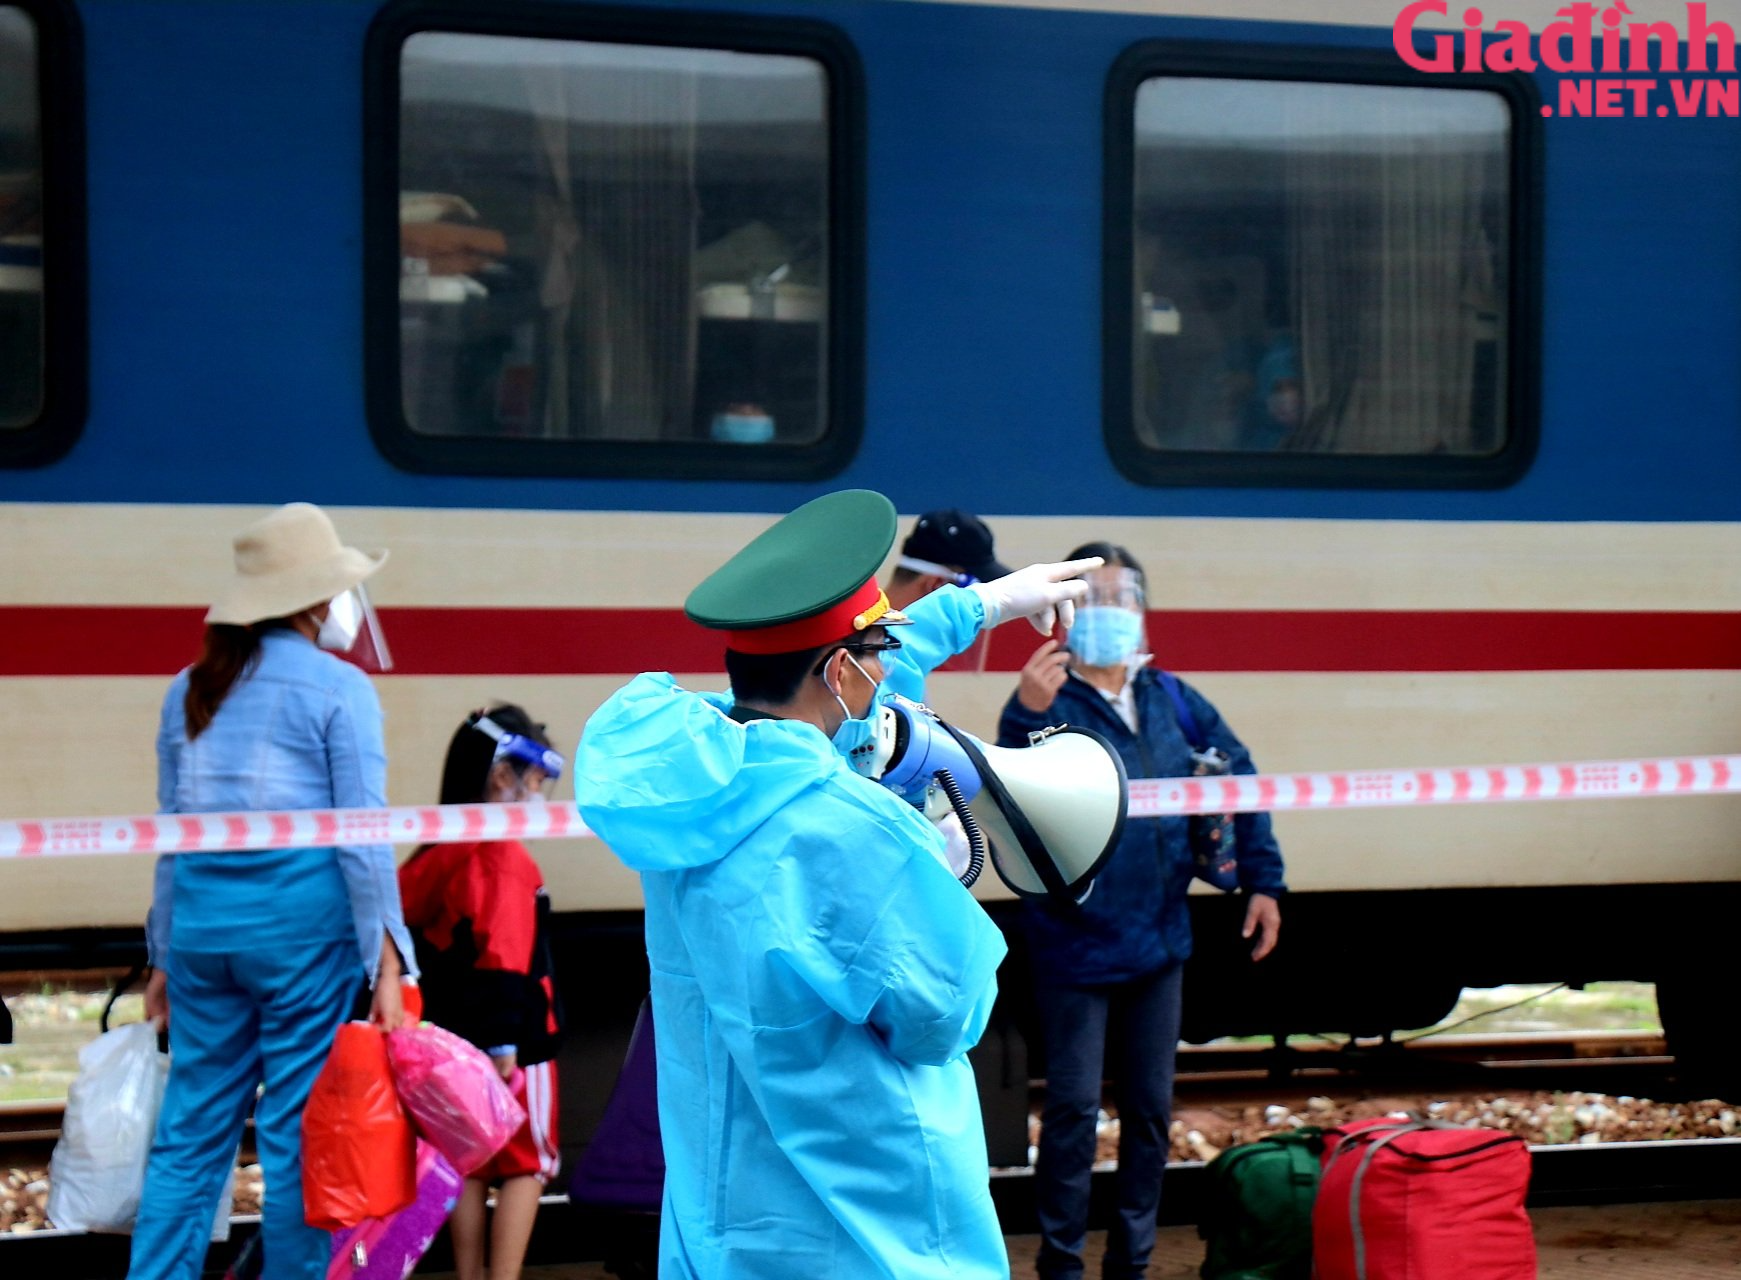 Chuyến tàu “yêu thương” đưa hàng trăm công dân Thừa Thiên Huế từ TP. HCM về quê - Ảnh 7.